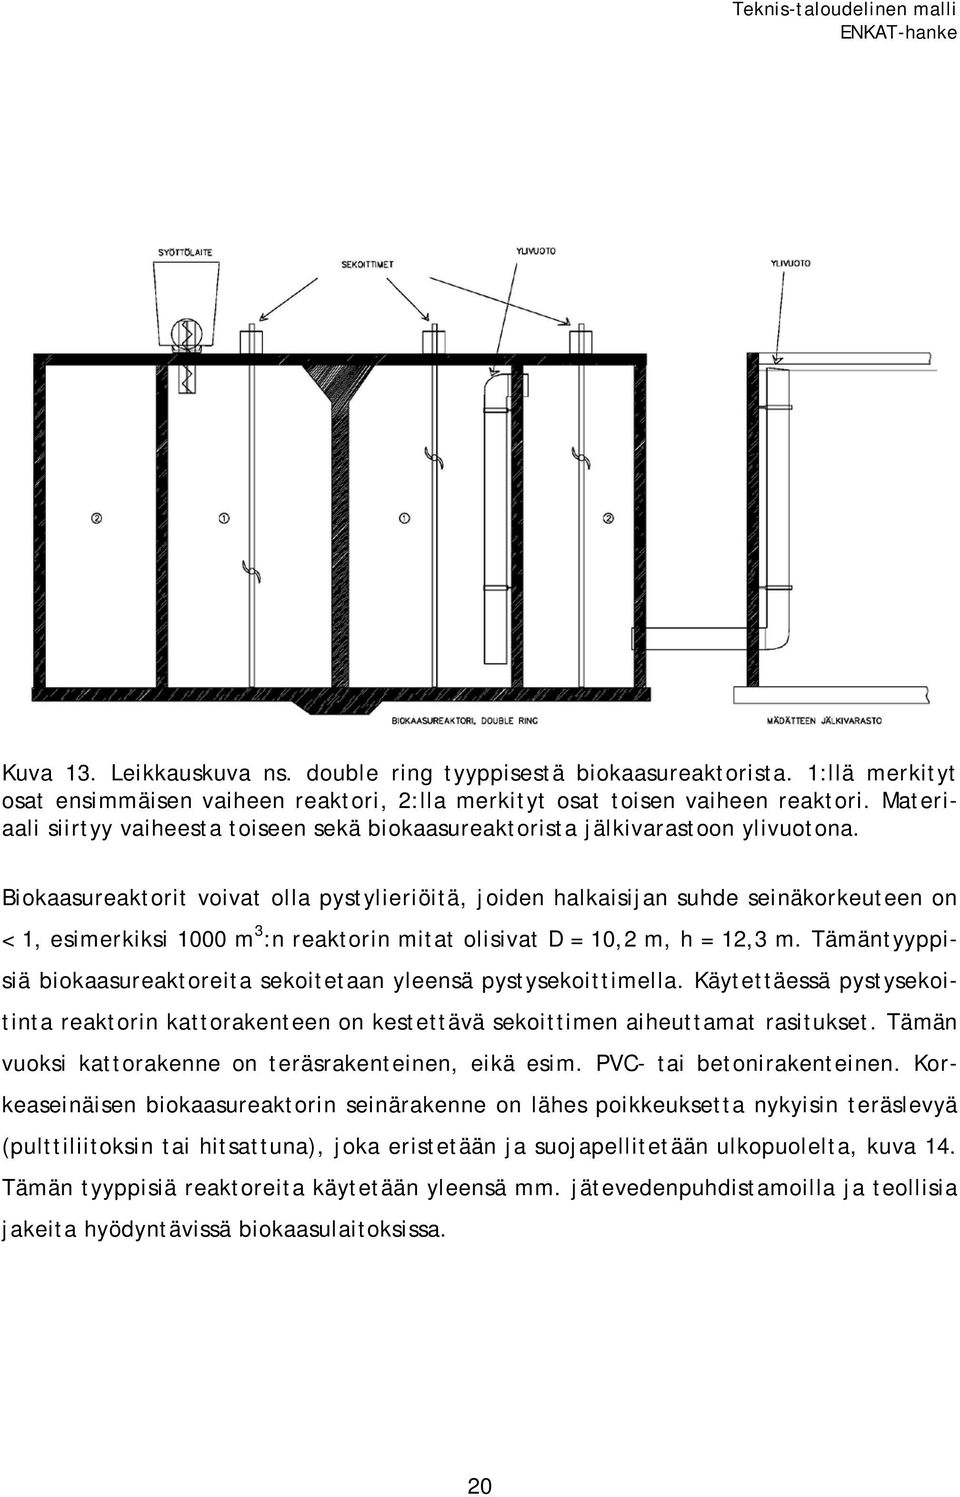 Biokaasureaktorit voivat olla pystylieriöitä, joiden halkaisijan suhde seinäkorkeuteen on < 1, esimerkiksi 1000 m 3 :n reaktorin mitat olisivat D = 10,2 m, h = 12,3 m.